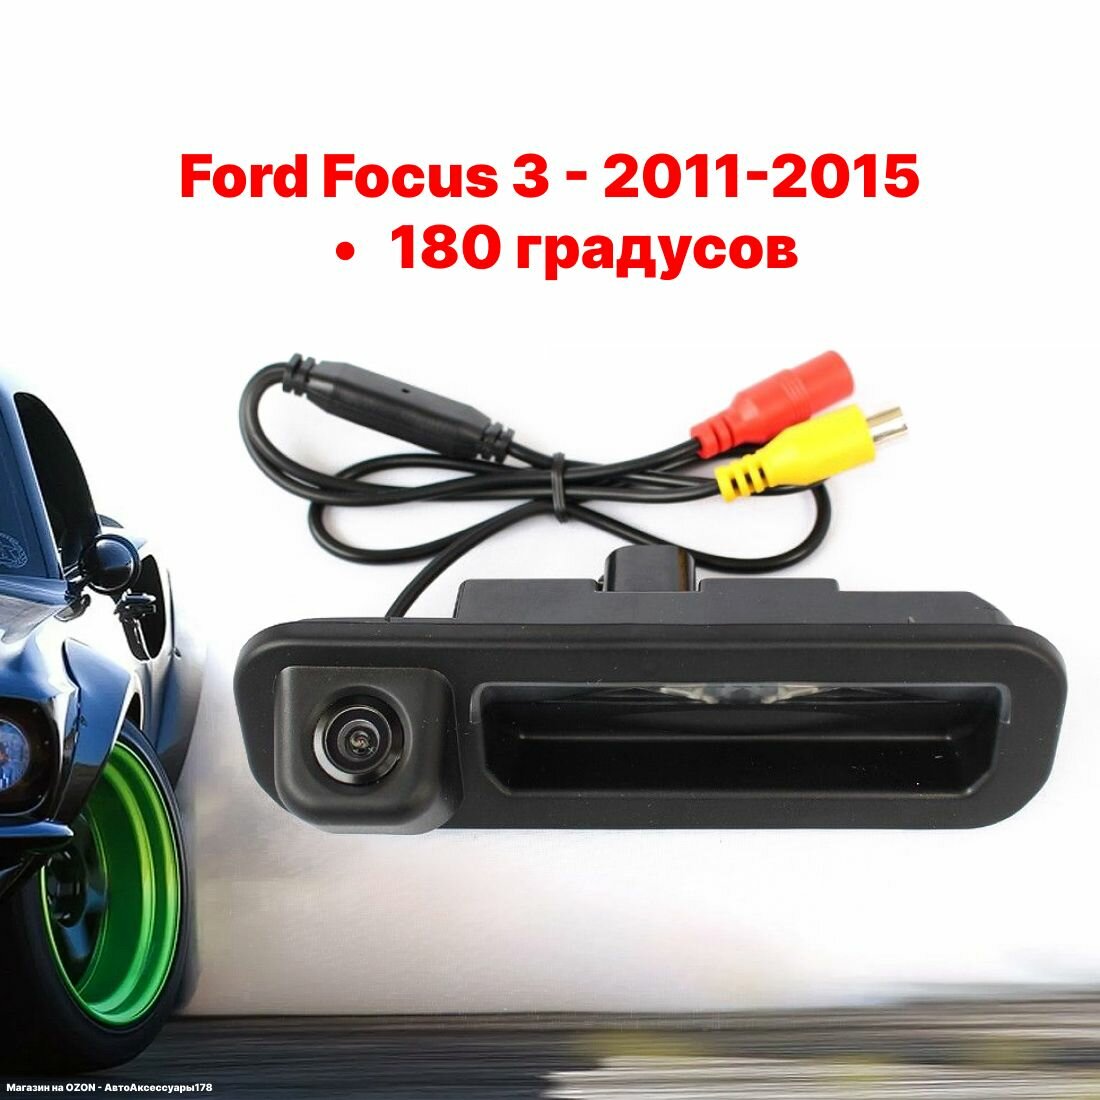 Камера заднего вида Форд Фокус 3 - 180 градусов (Ford Focus 3 - 2011-2015)